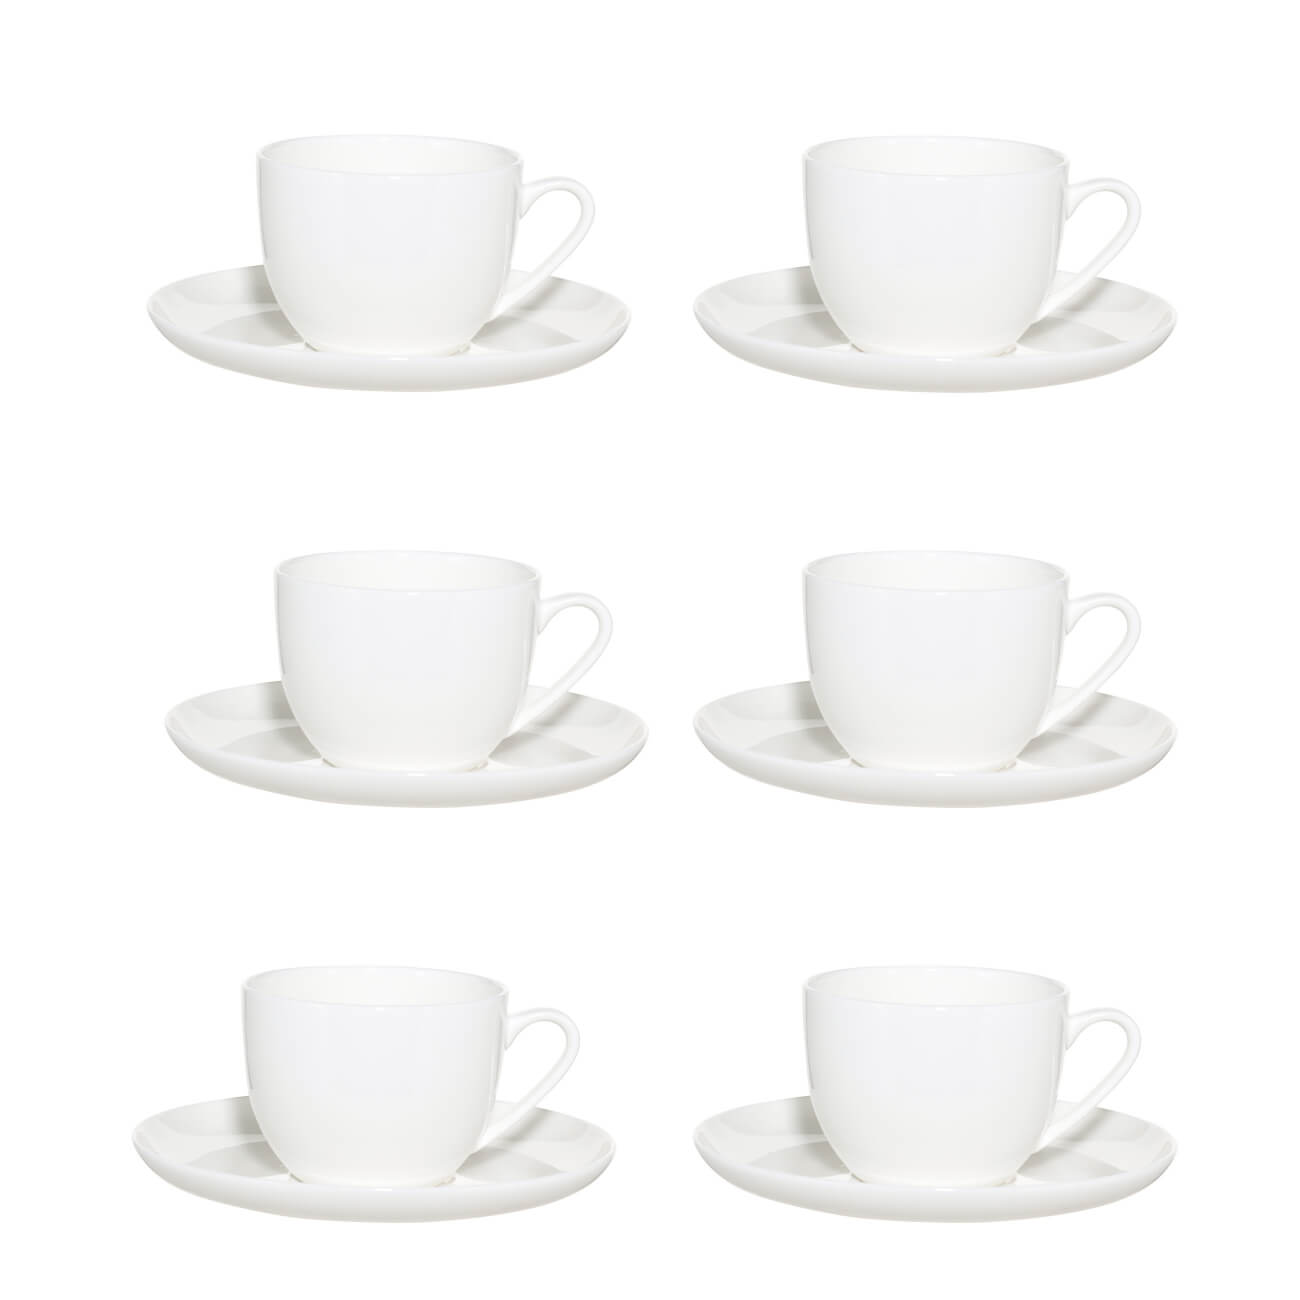 Пара чайная, 6 перс, 12 пр, 250 мл, фарфор F, белая, Ideal white чайная пара nouvelle